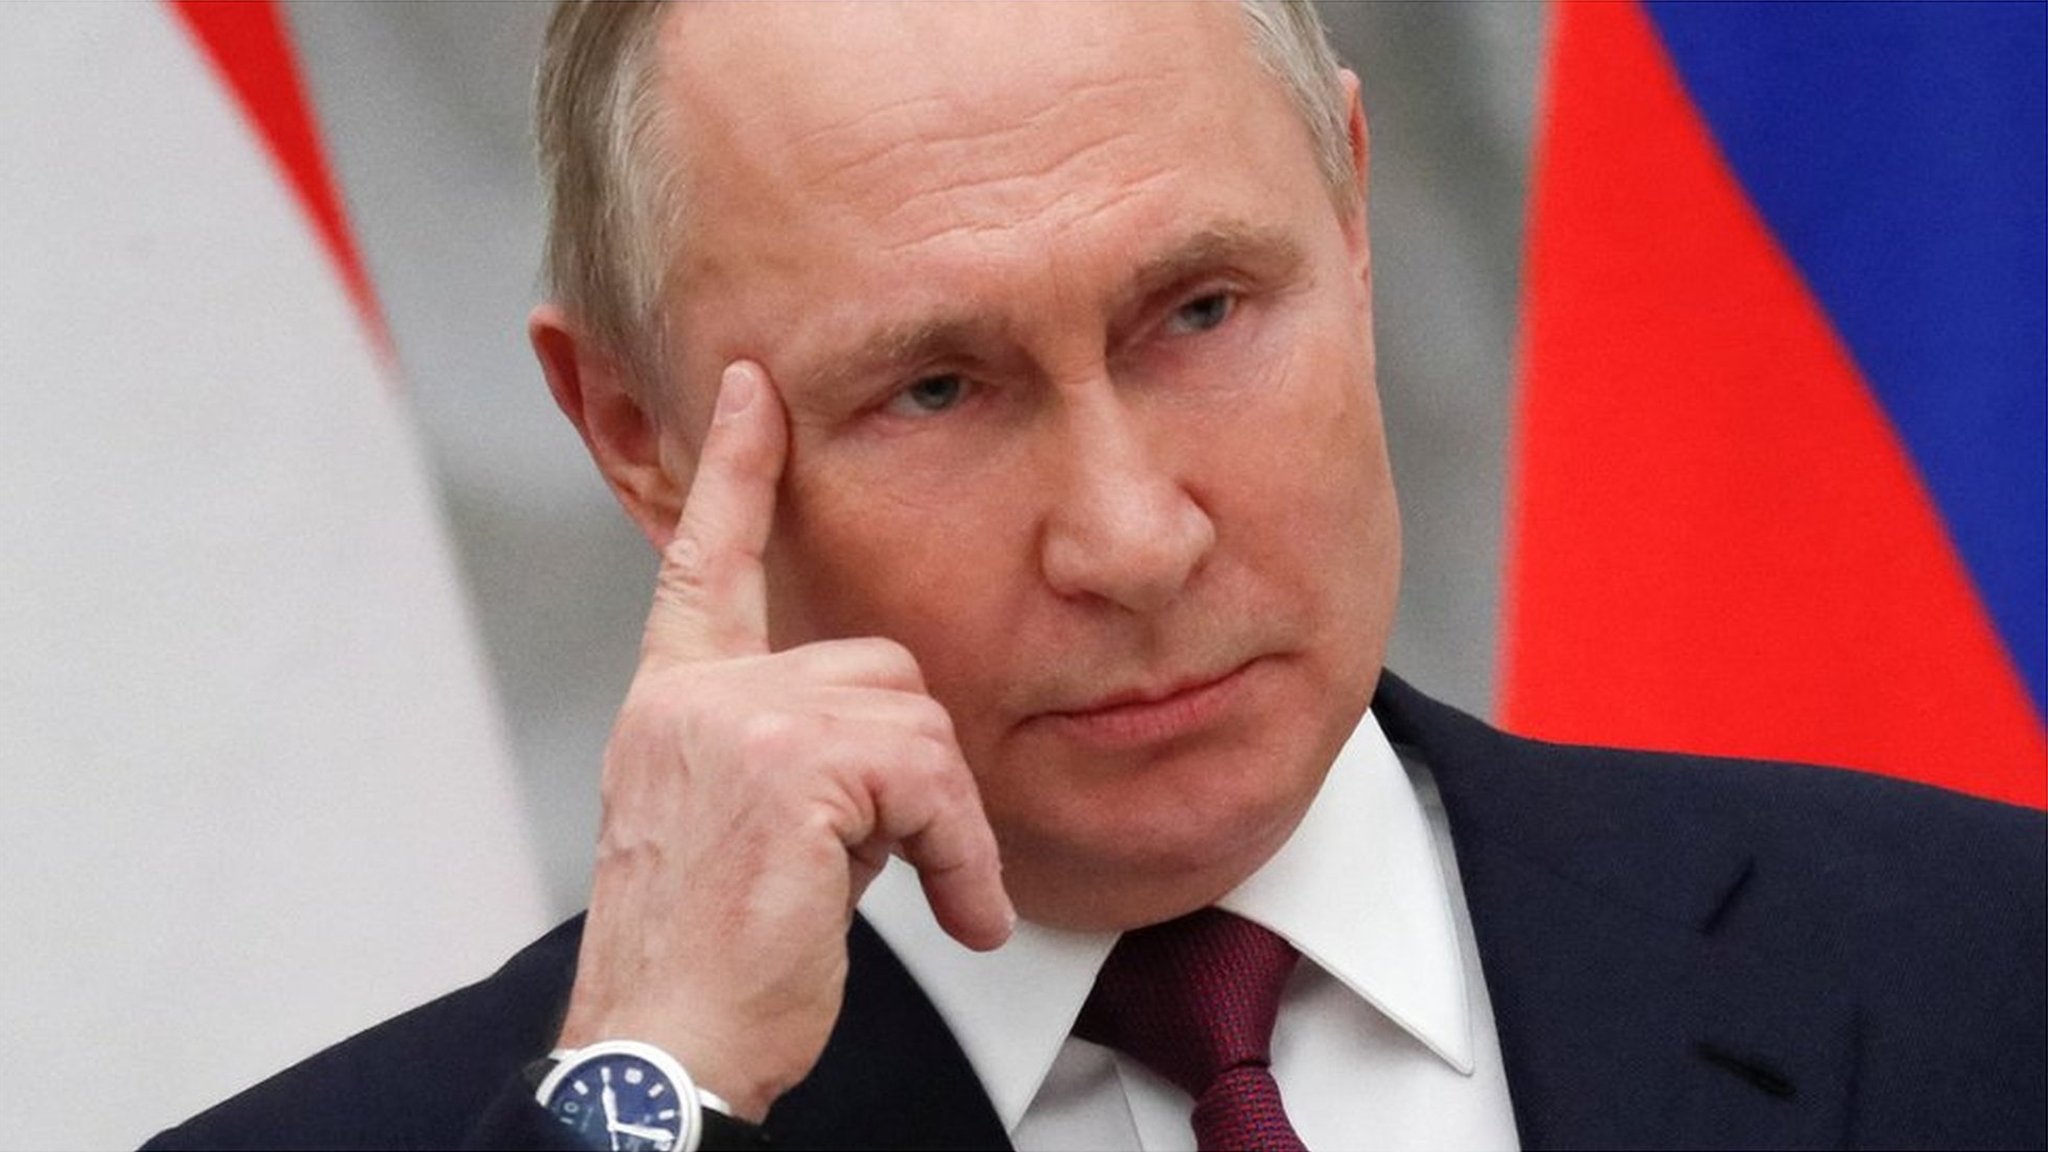 暗殺 日本 プーチン プーチン氏暗殺を再度呼び掛け、米共和党の有力議員